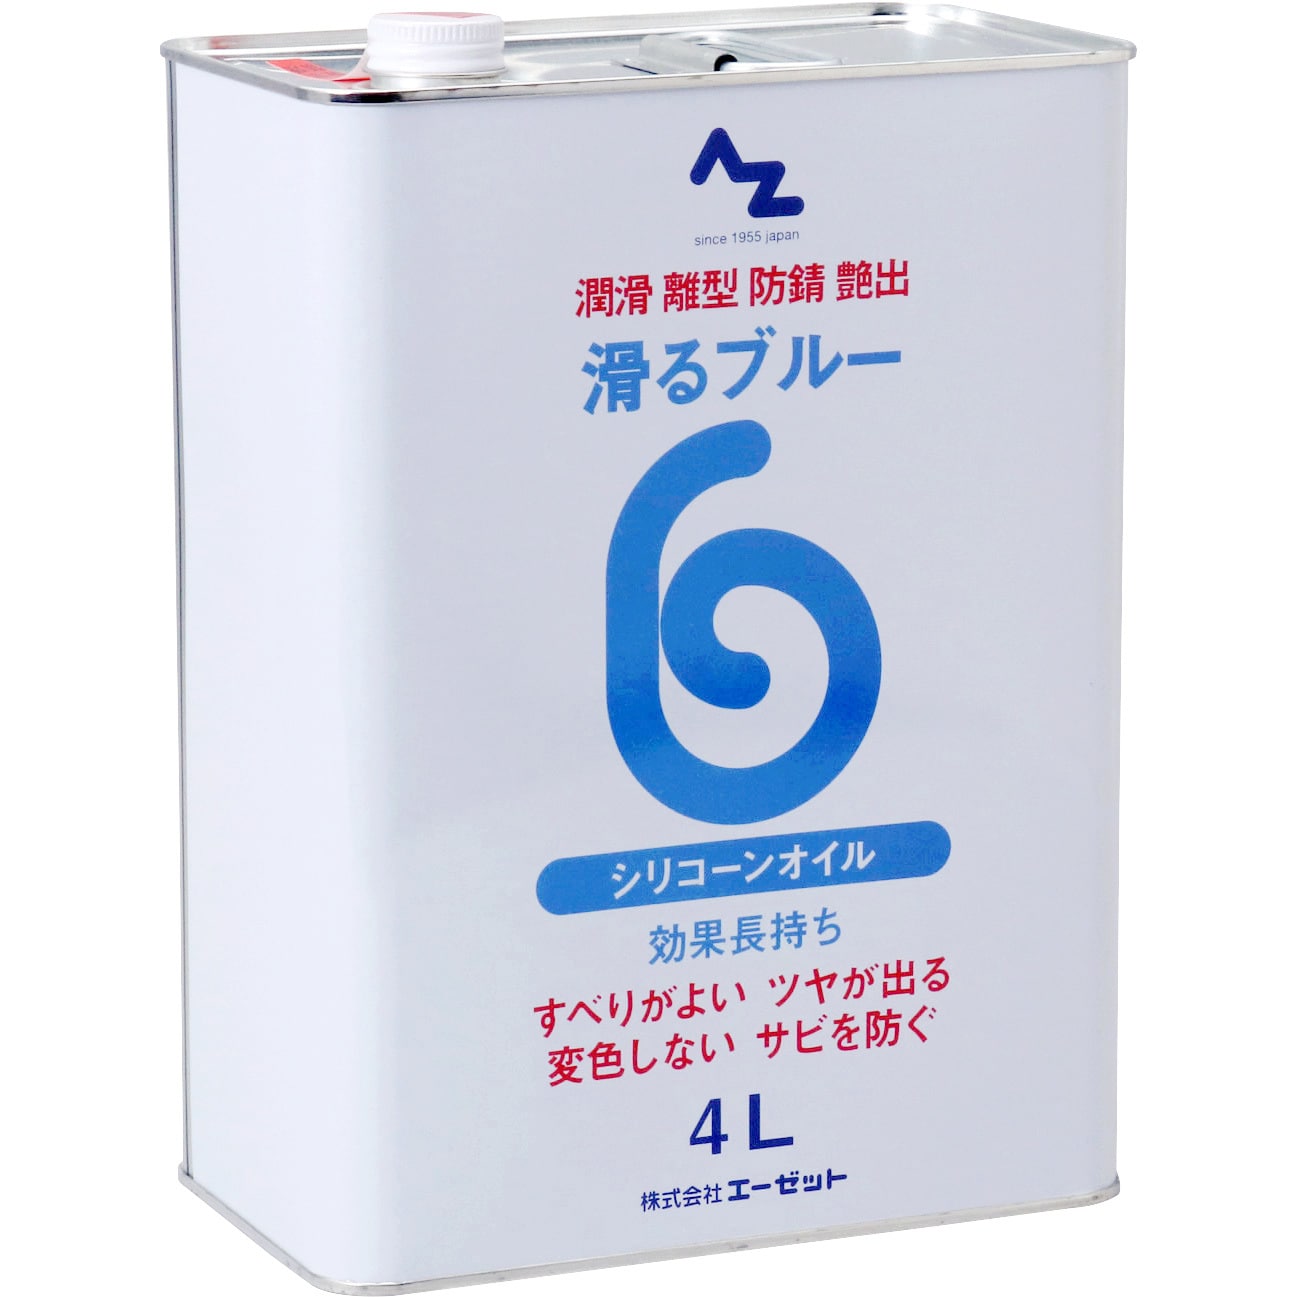 AZ822 AZ 滑るブルー原液 1缶(4L) エーゼット 【通販サイトMonotaRO】